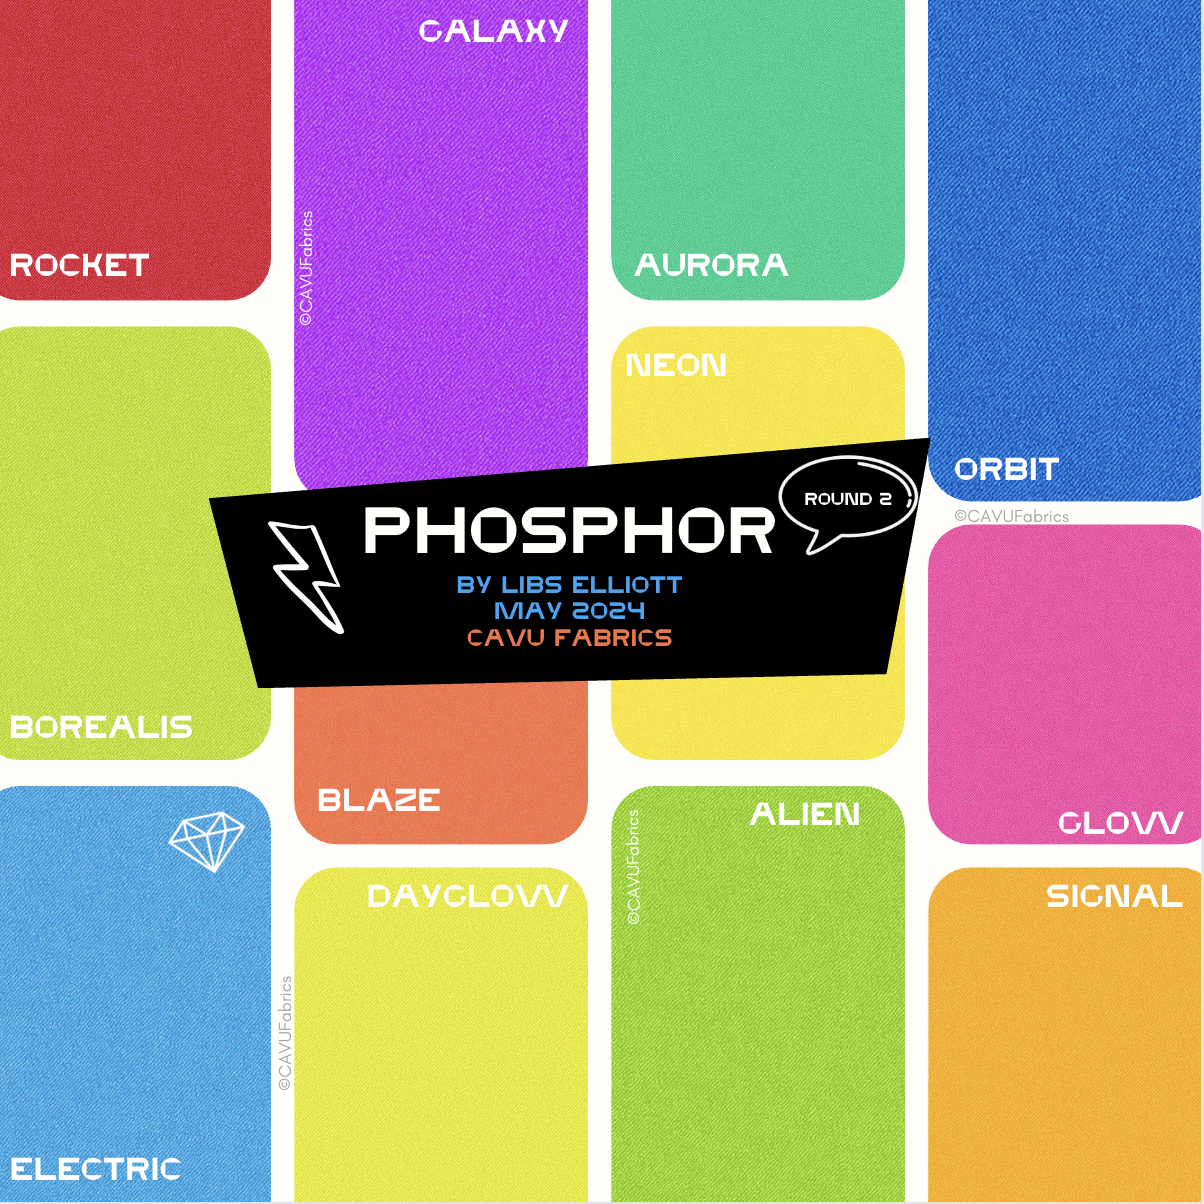 Borealis - Phosphor by Libs Elliott